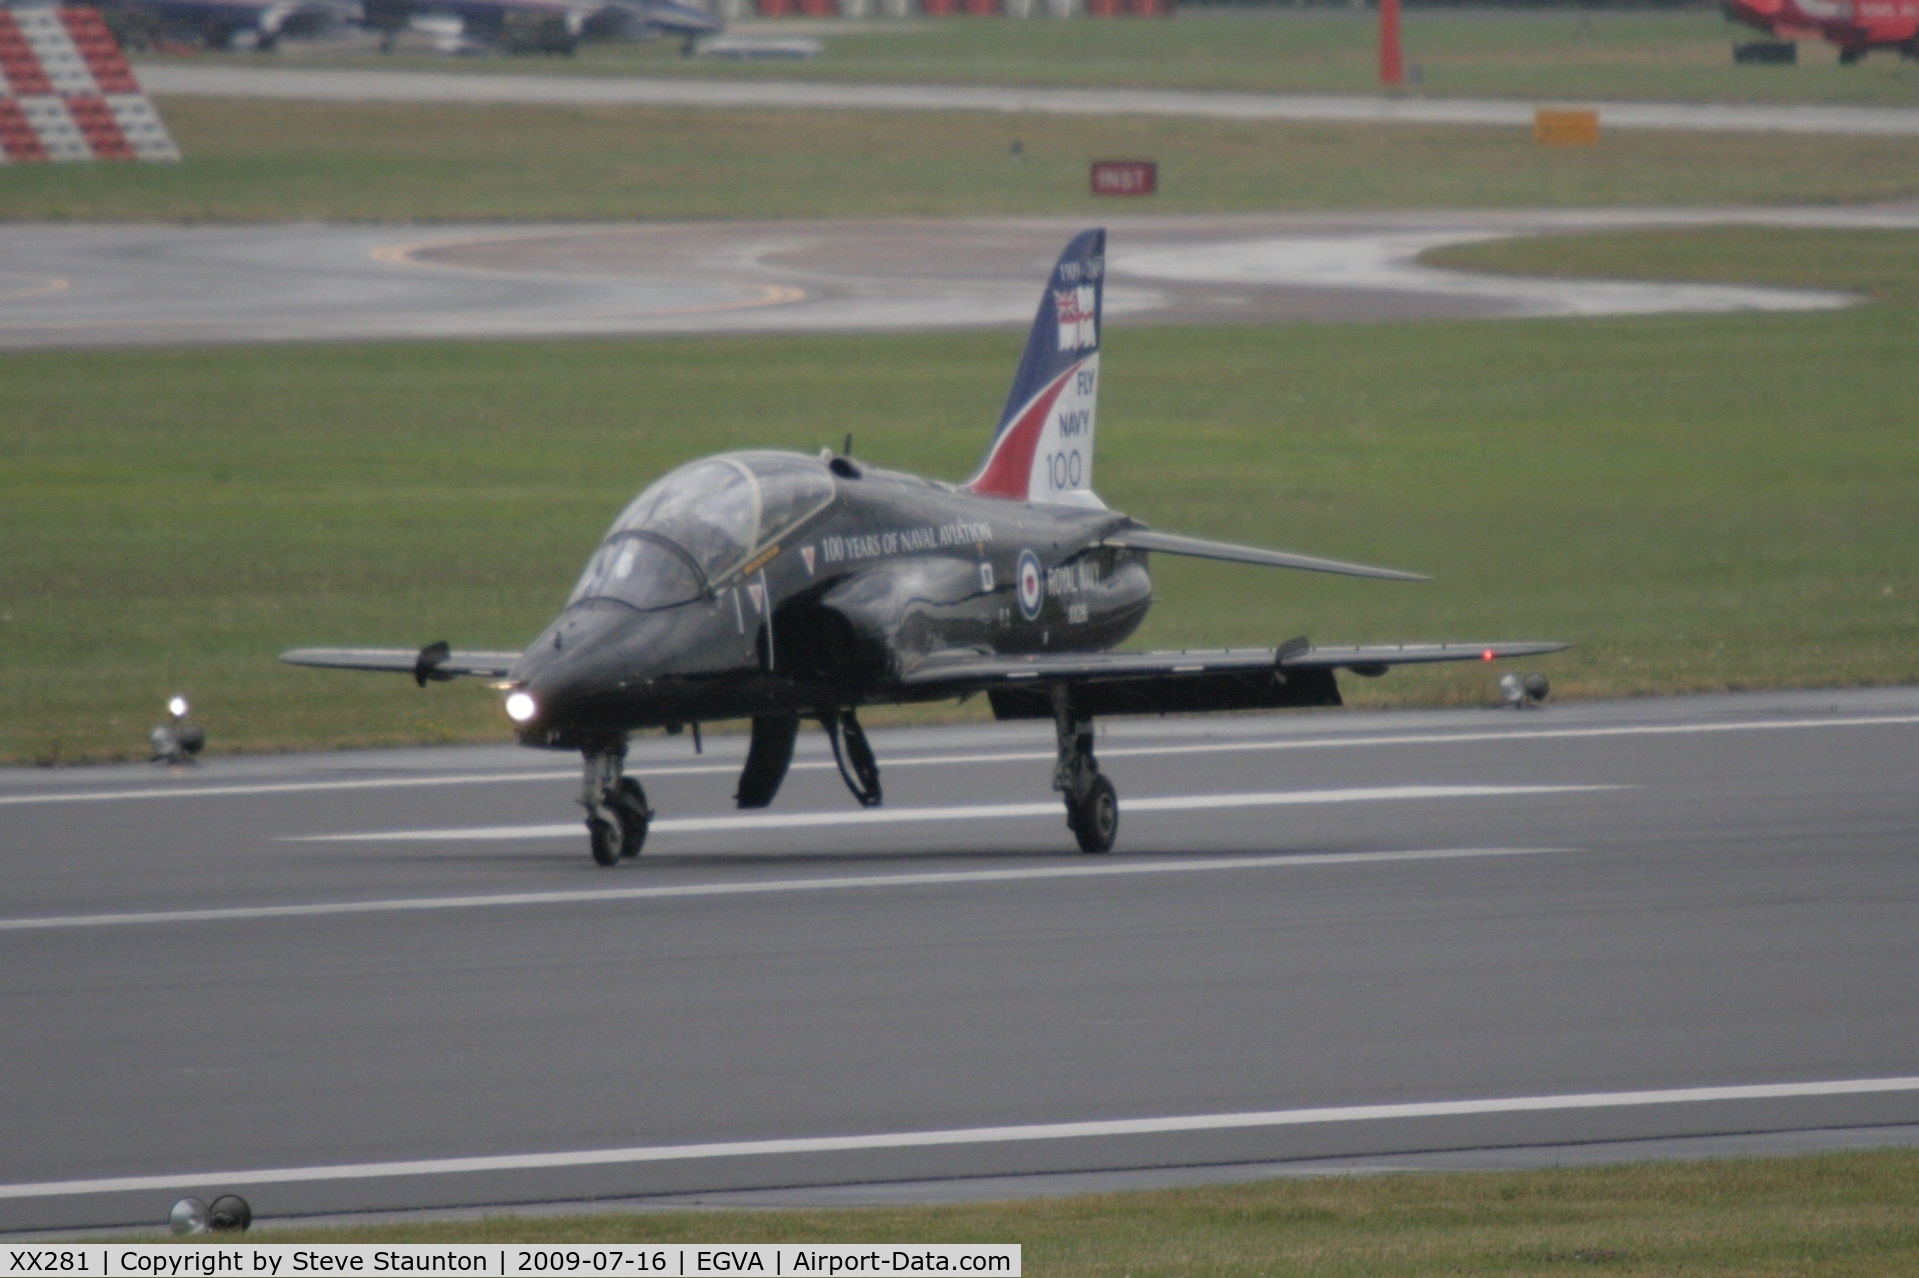 XX281, 1979 Hawker Siddeley Hawk T.1A C/N 106/312106, Taken at the Royal International Air Tattoo 2009